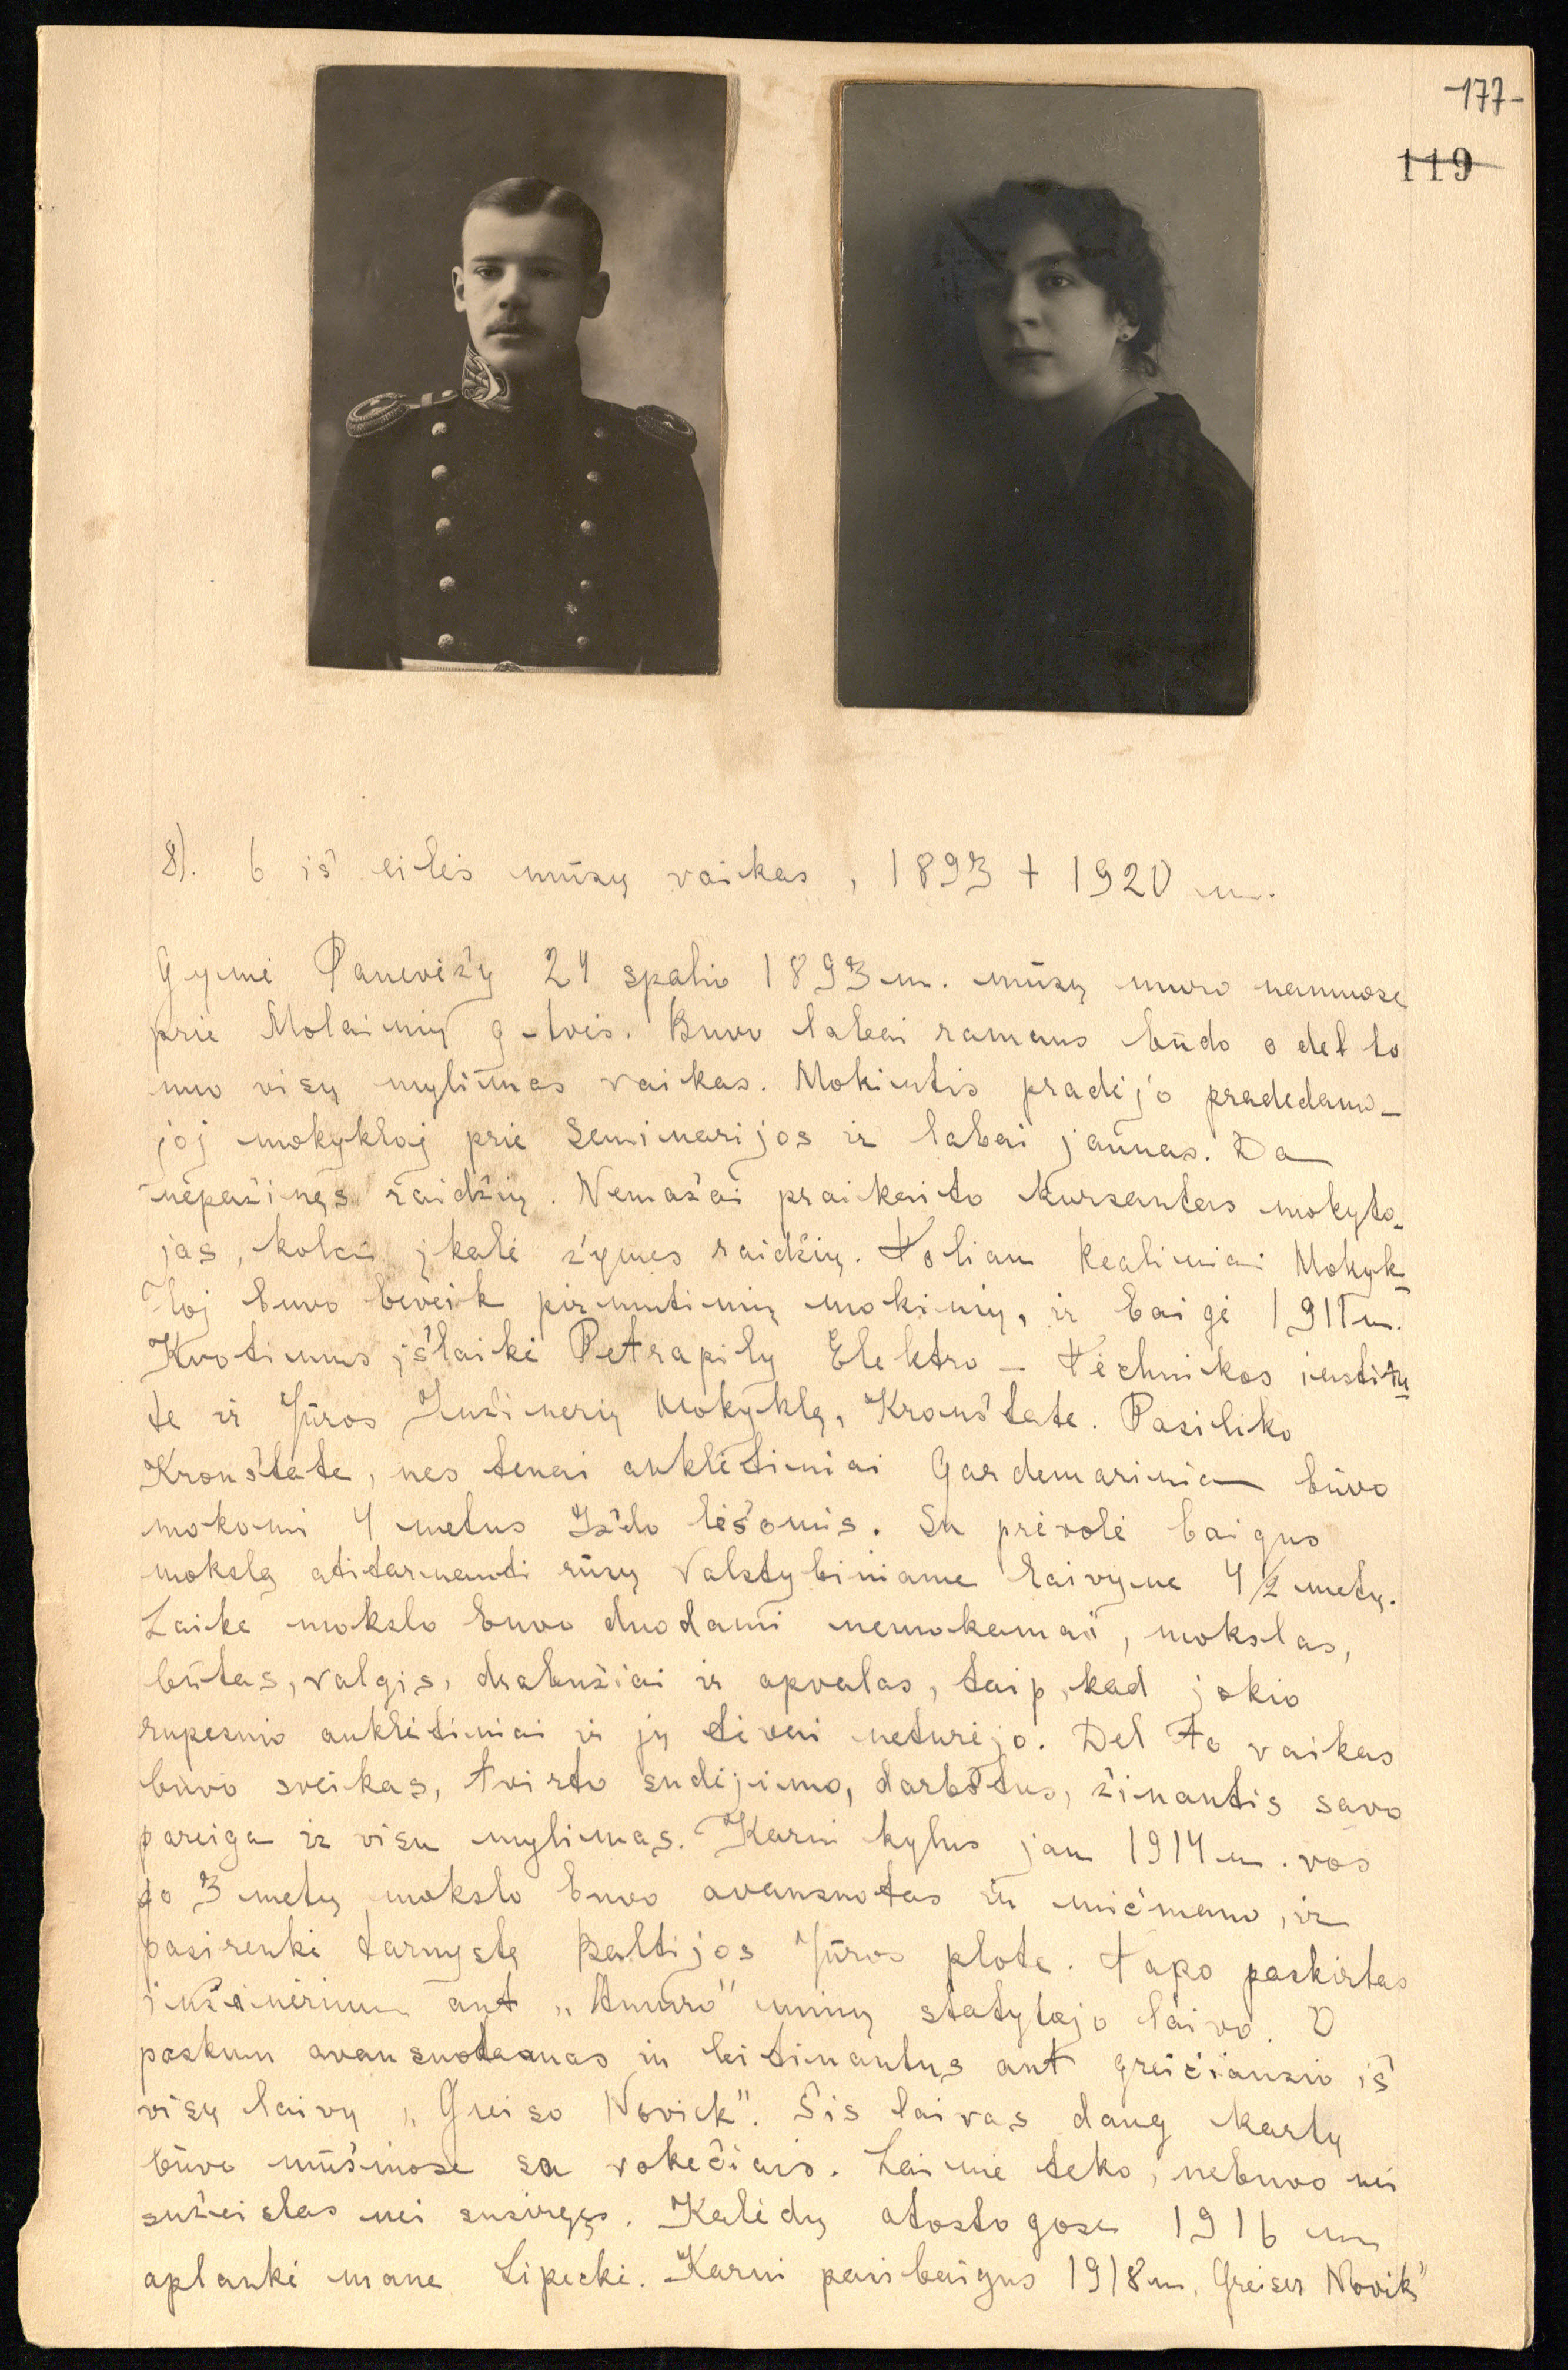 Panevėžio visuomenės veikėjo Juozapo Kozakevičiaus atsiminimų „Amžiaus kronika“ fragmentas, kuriame pateikiama jo sūnaus Juozo Kozakevičiaus (1893–1920) biografija (fotografija lapo kairėje)